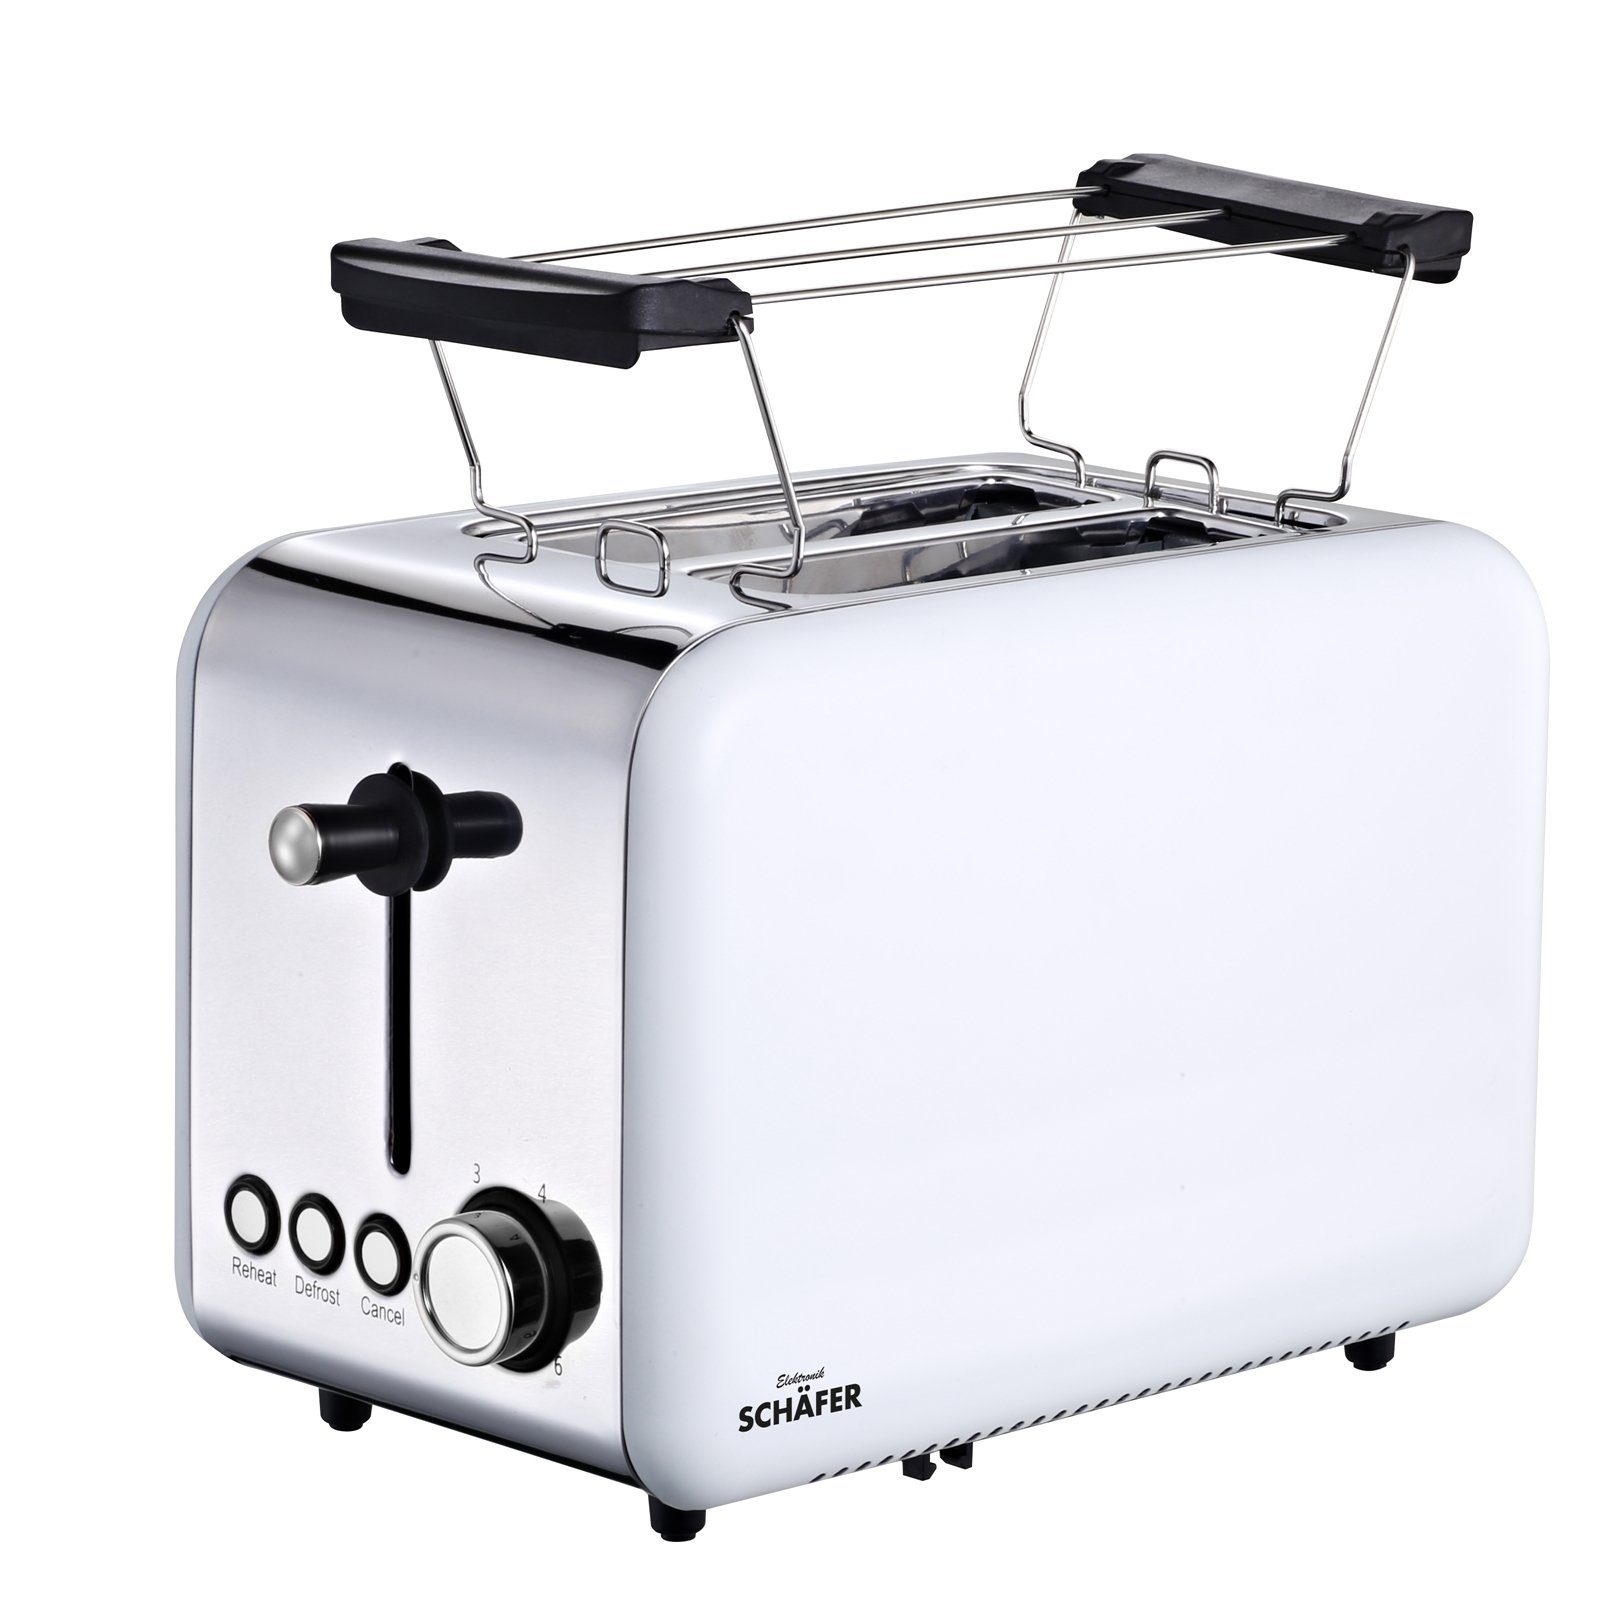 Schäfer Toaster Deluxe, Weiß 2 Schlitz-Toaster, Toaster 850 W